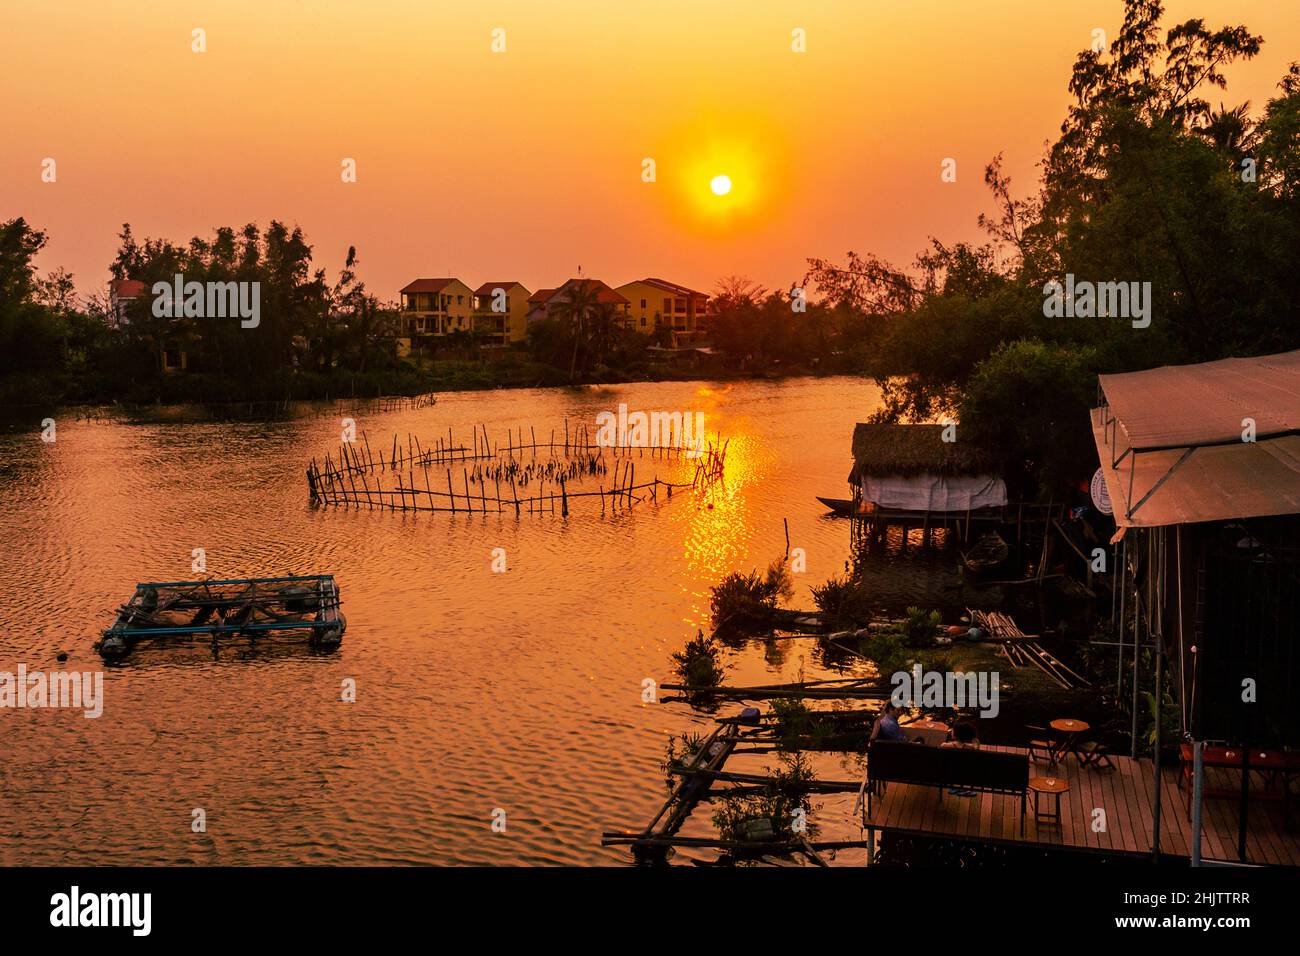 La rivière Thu bon s'écoule vers la mer non loin de cette image panoramique au coucher du soleil à Hoi an. Banque D'Images